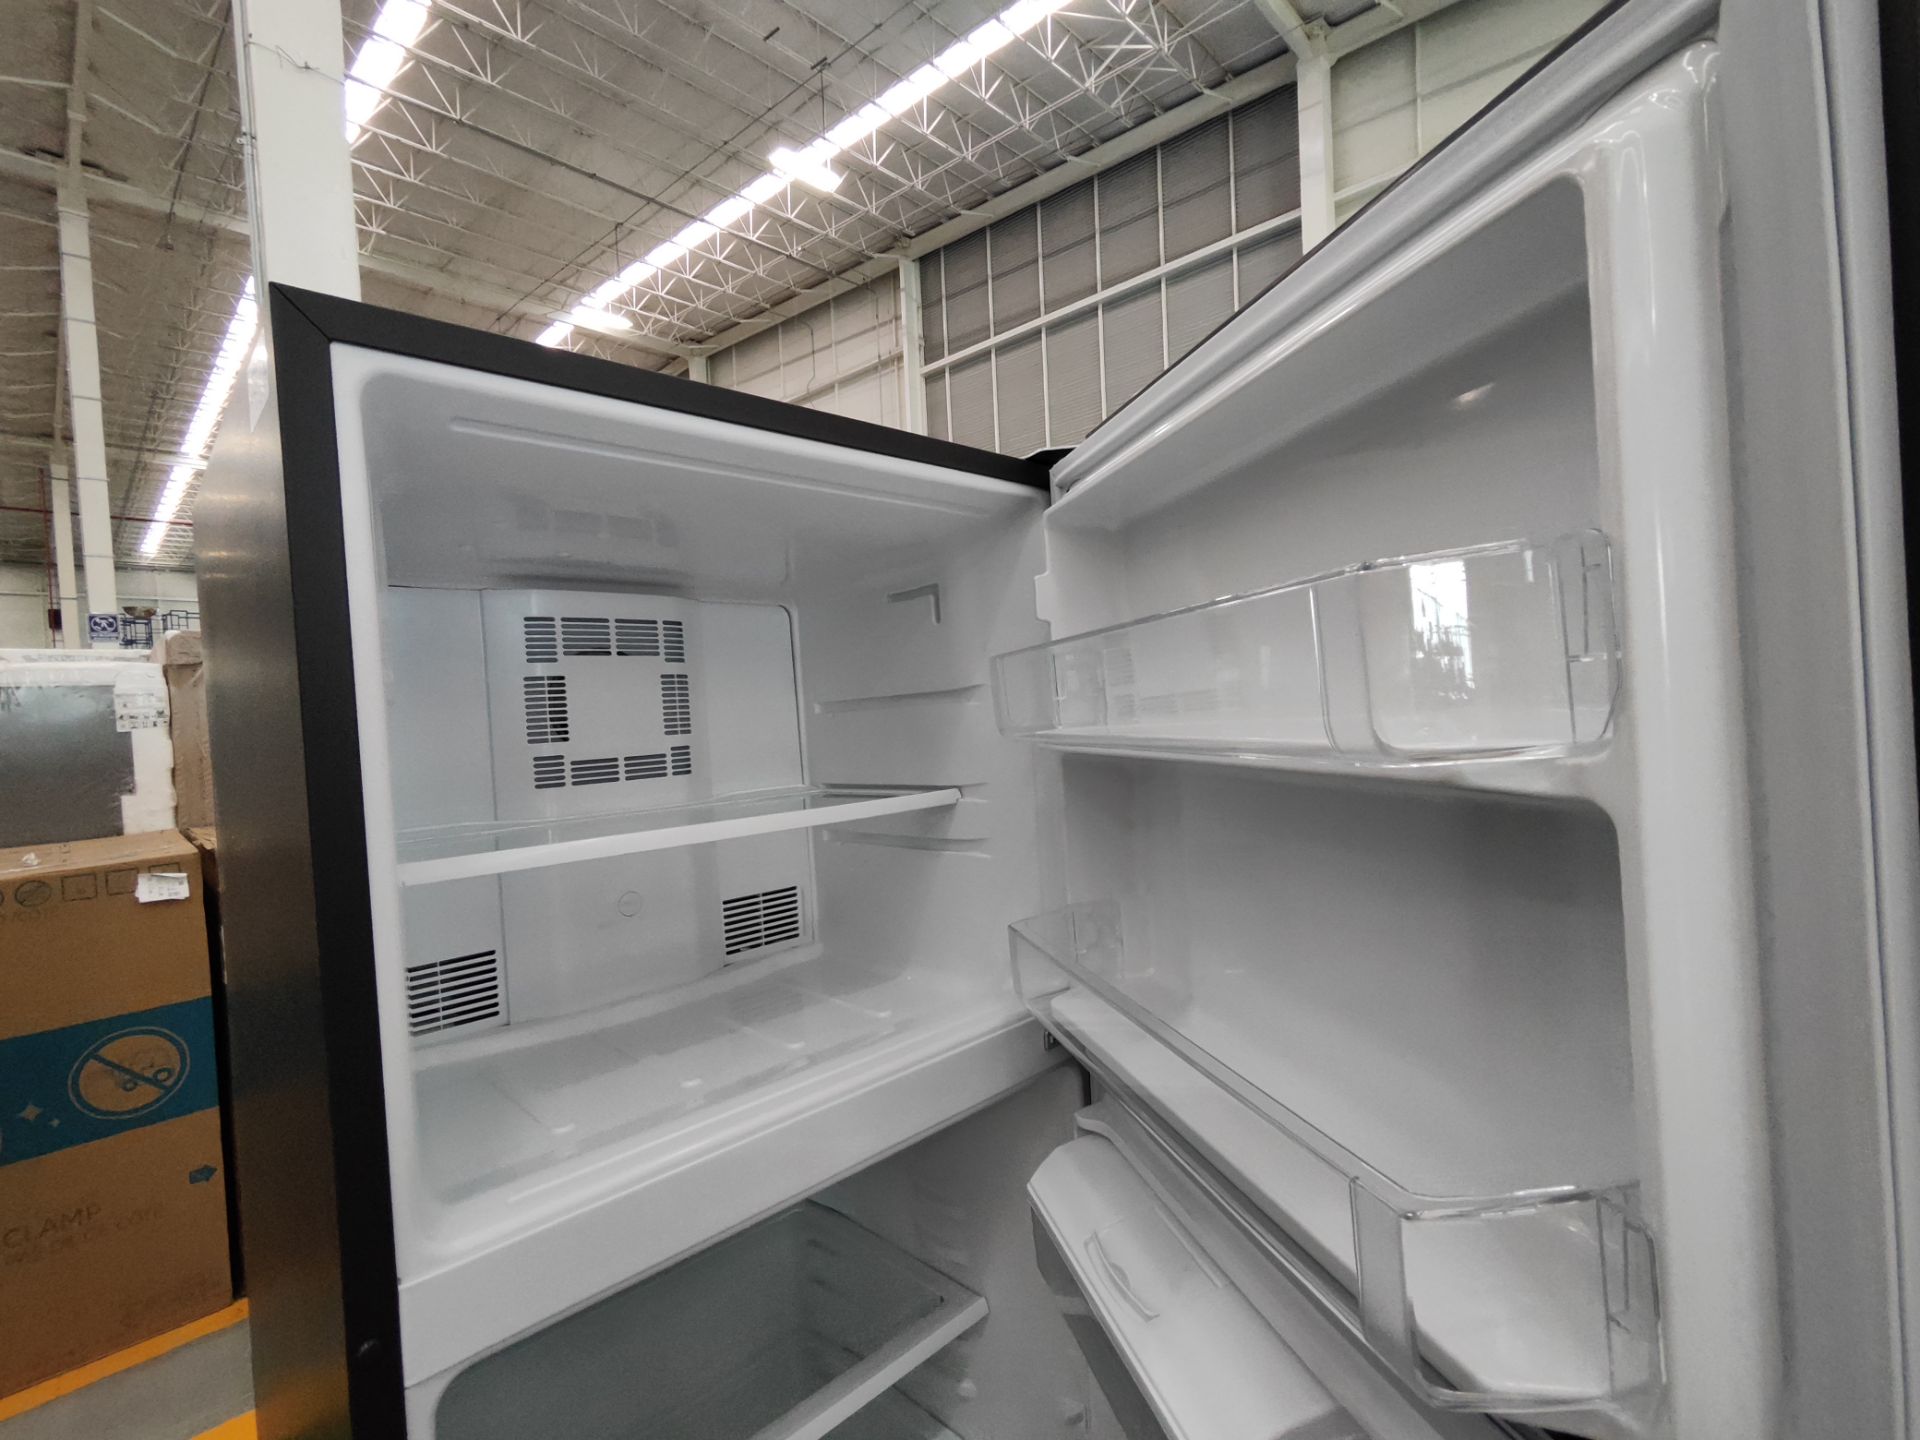 Lote de 2 refrigeradores contiene: 1 refrigerador con dispensador de agua Marca MABE, Modelo RME360 - Bild 7 aus 8